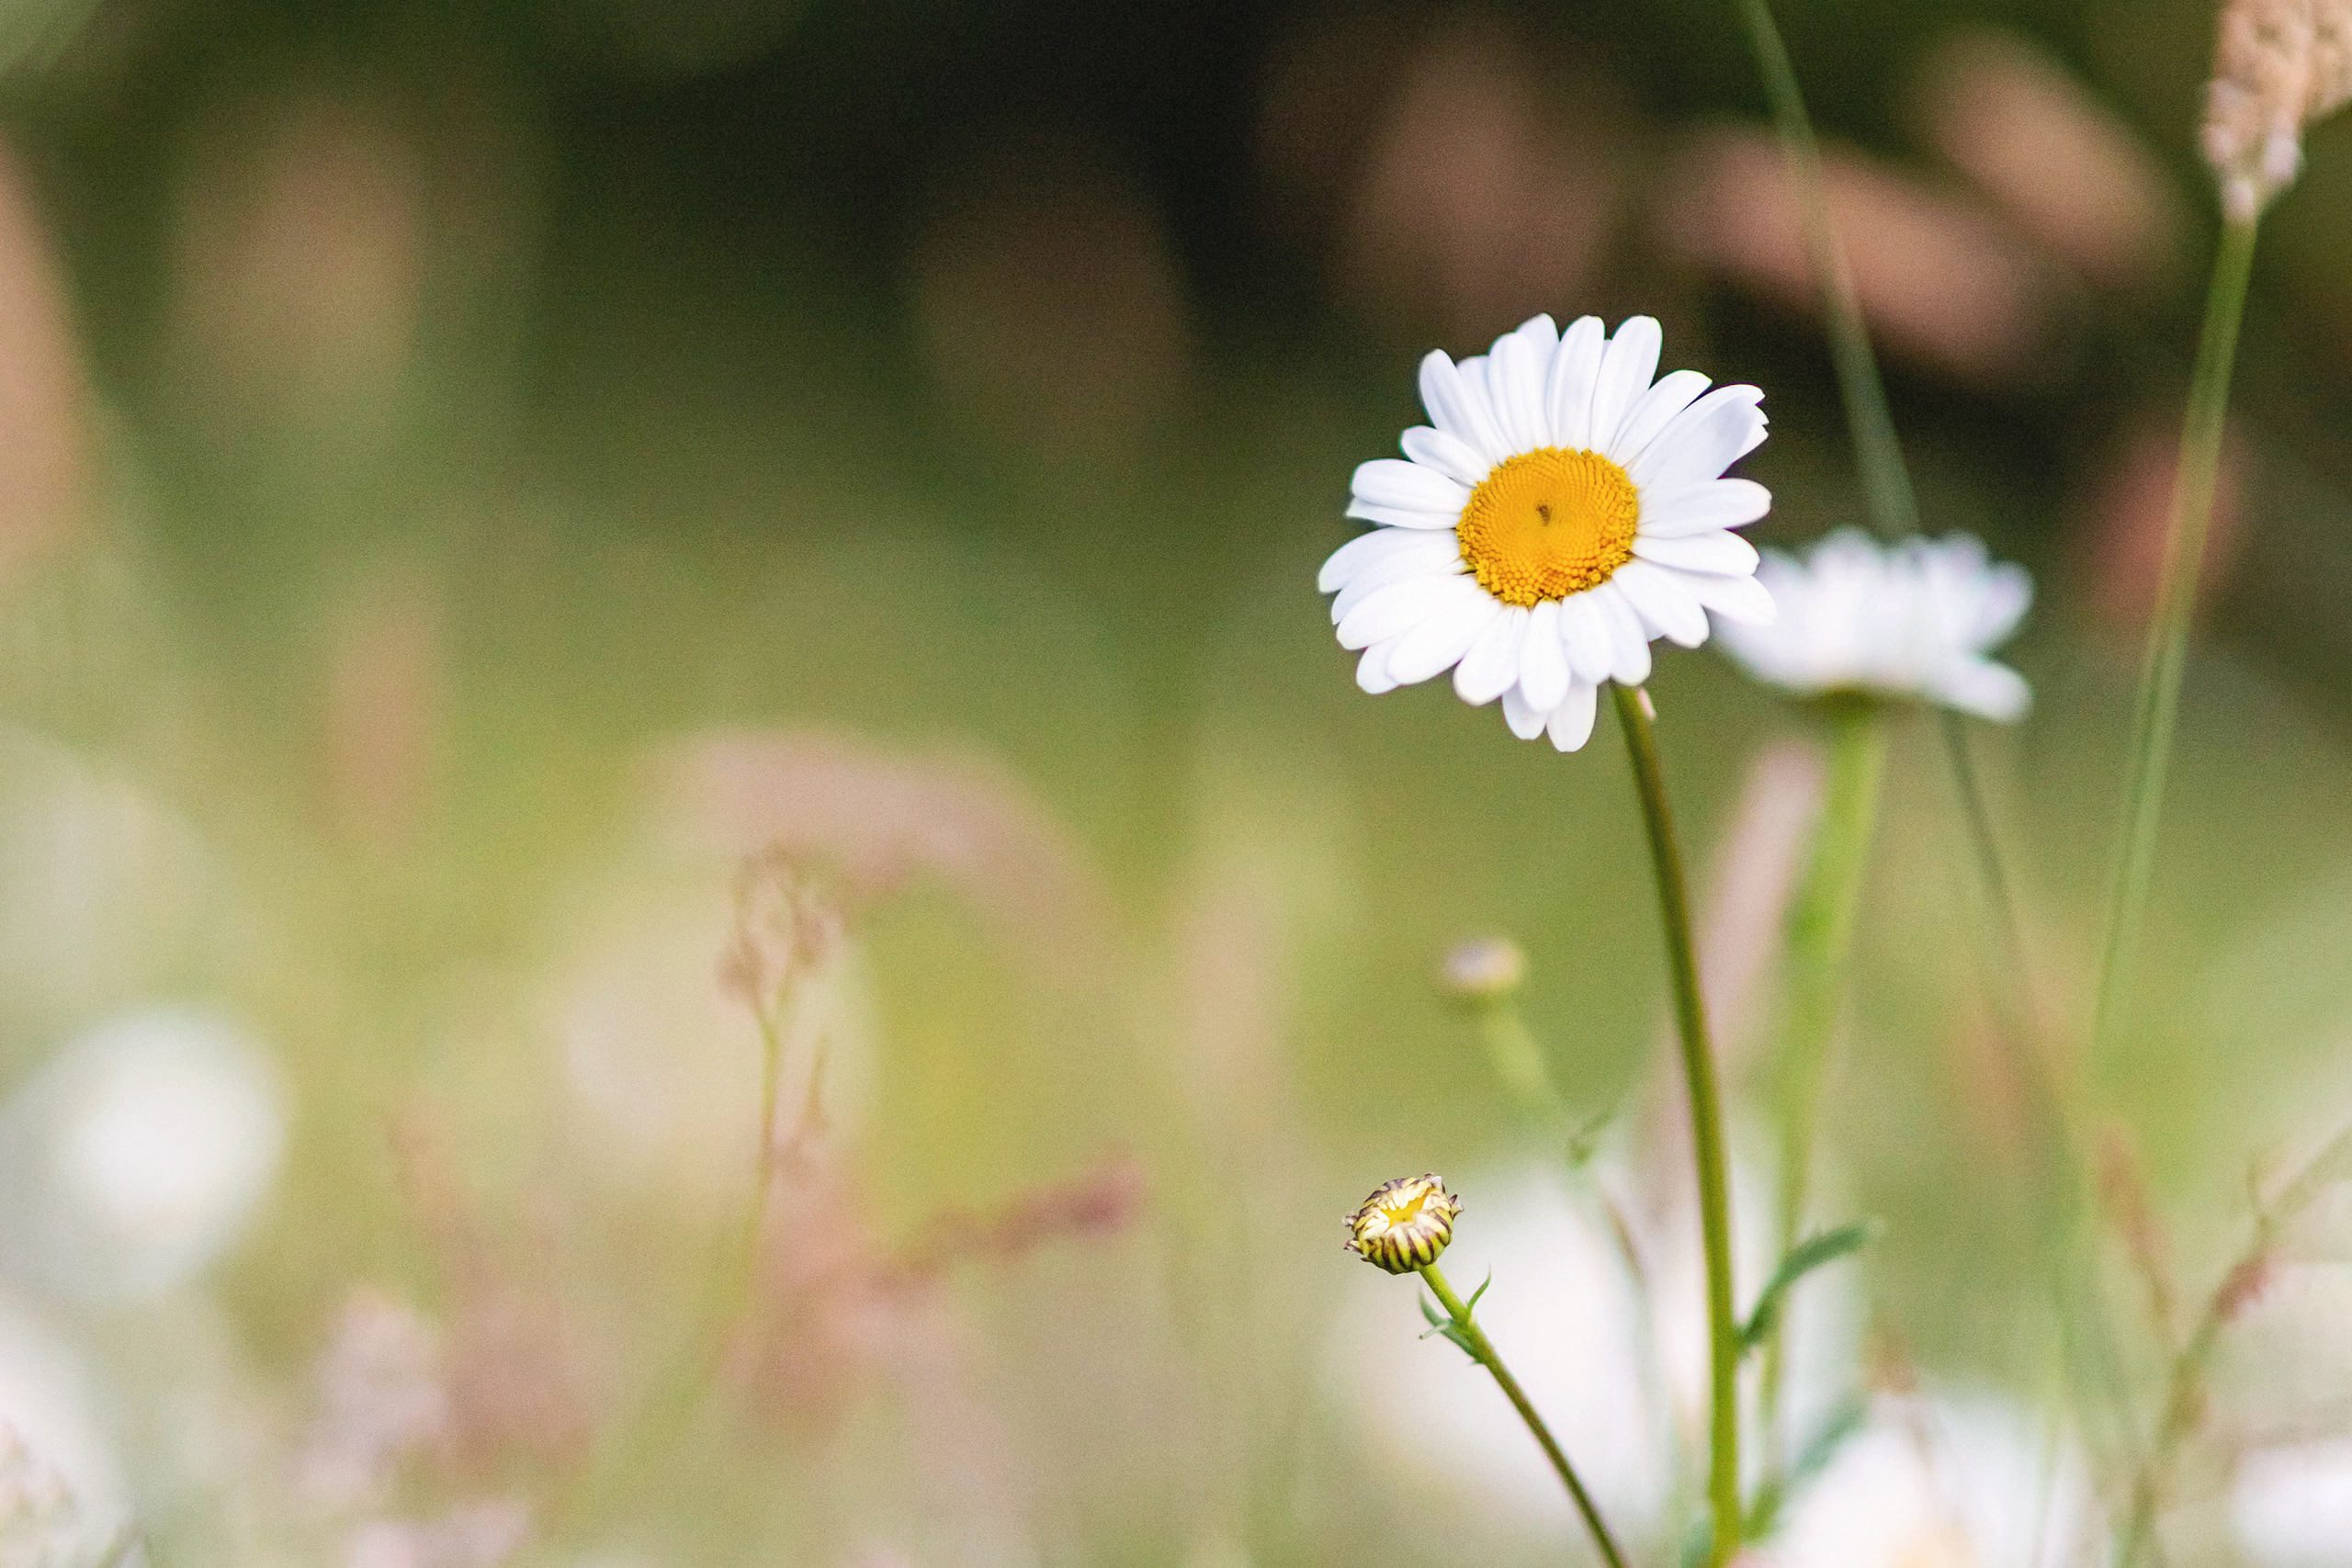 Daisy in flower meadow